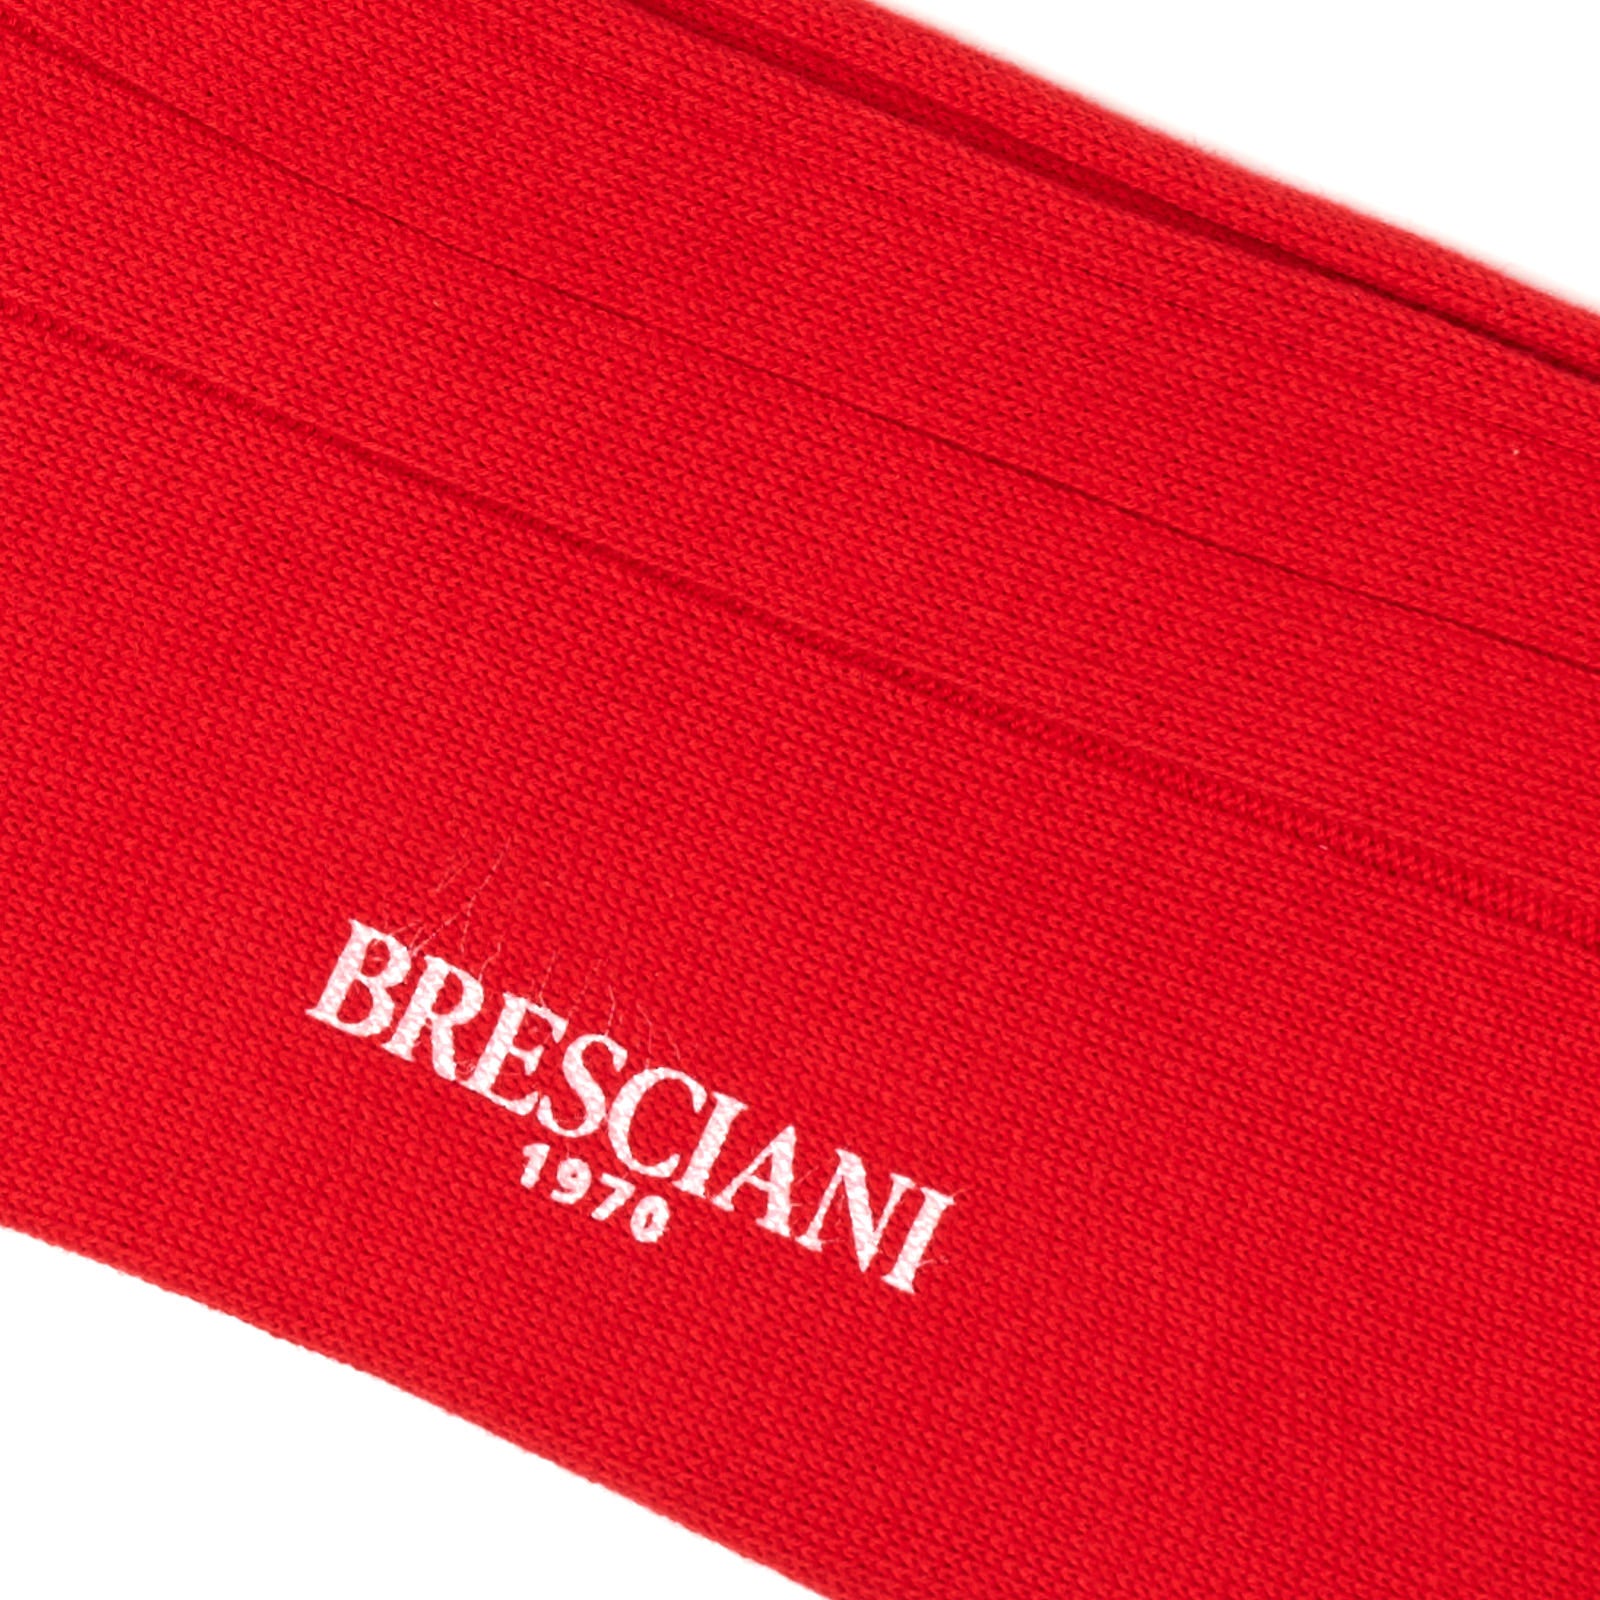 BRESCIANI Cotton Striped Design Mid Calf Length Socks US M-L BRESCIANI